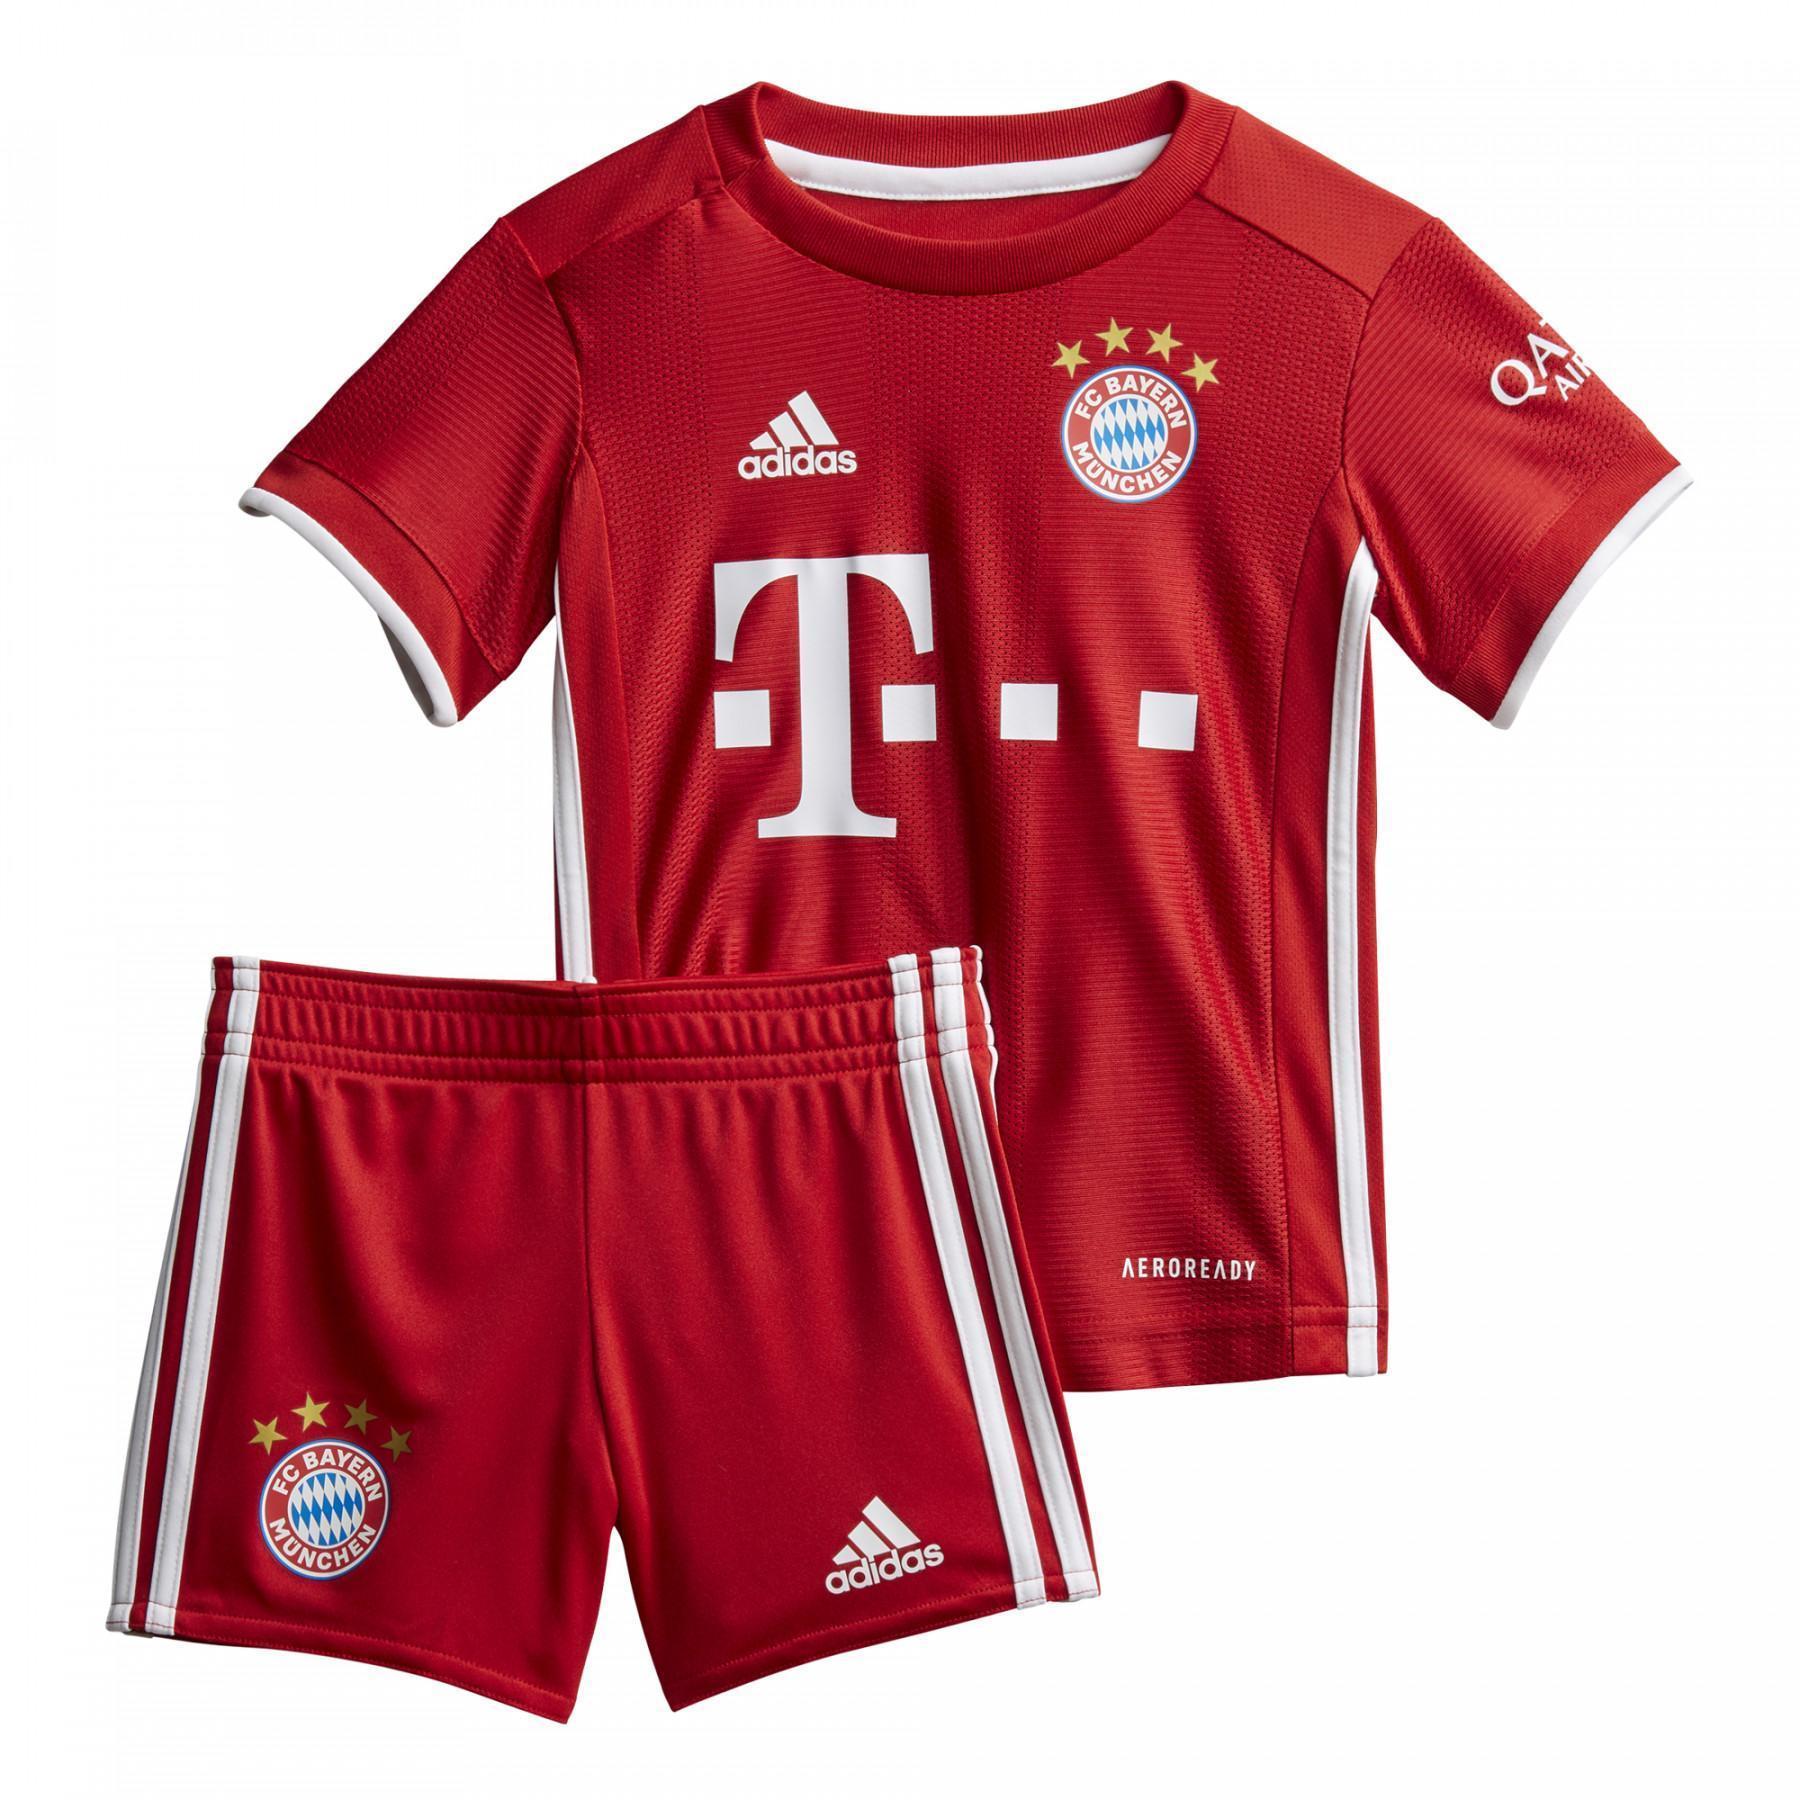 Abbigliamento per bambini home Bayern 2020/21